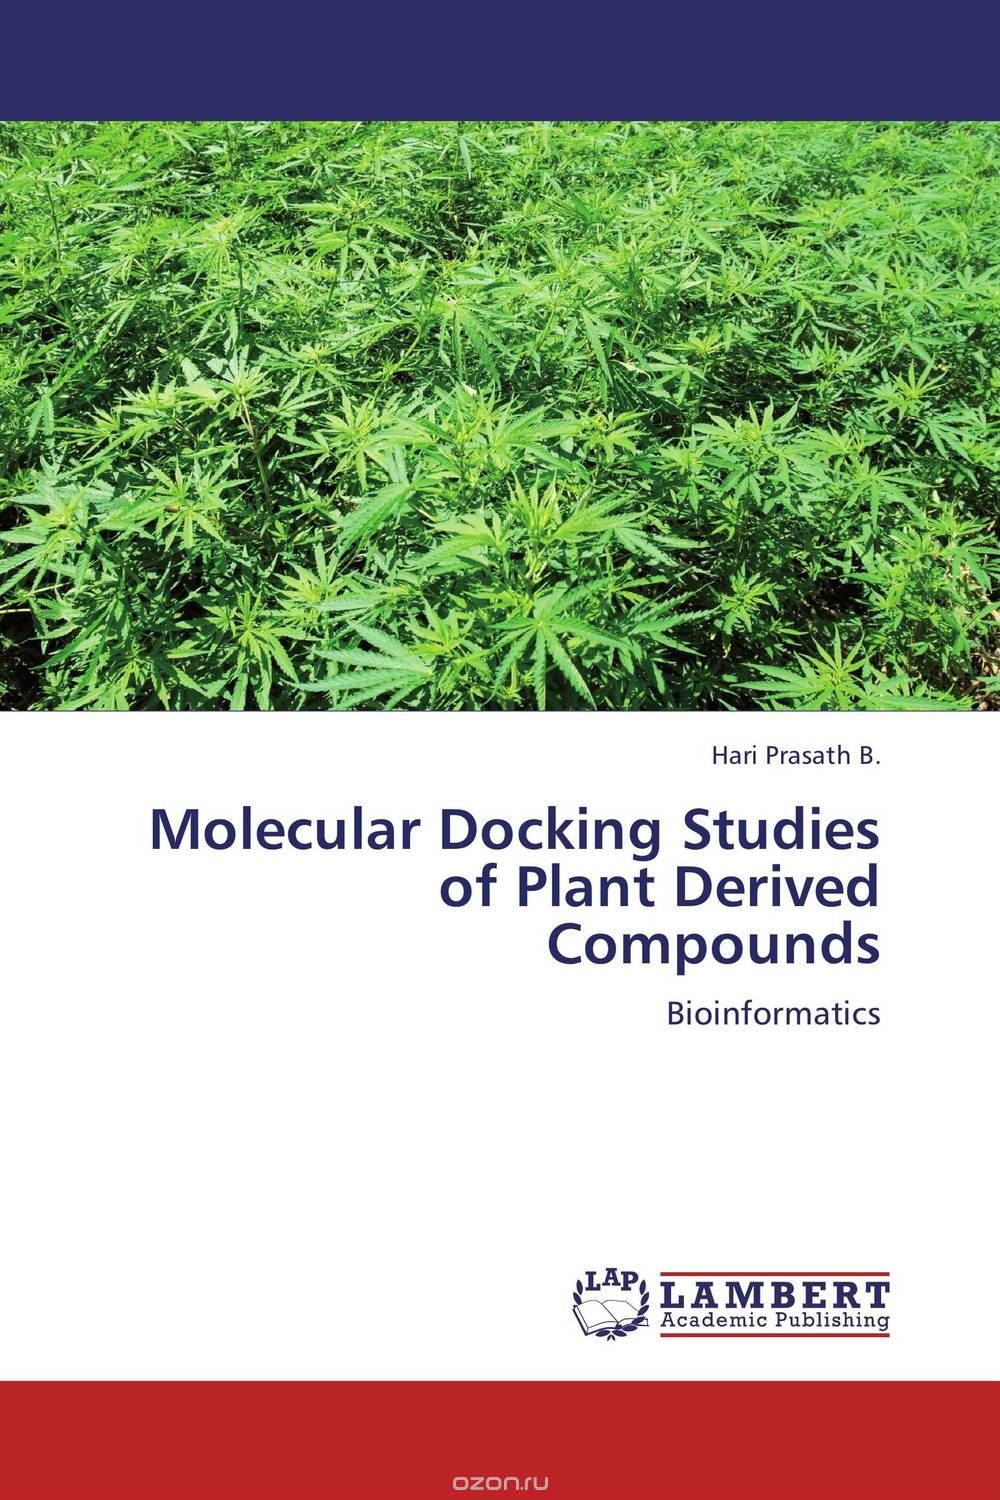 Скачать книгу "Molecular Docking Studies of Plant Derived Compounds"